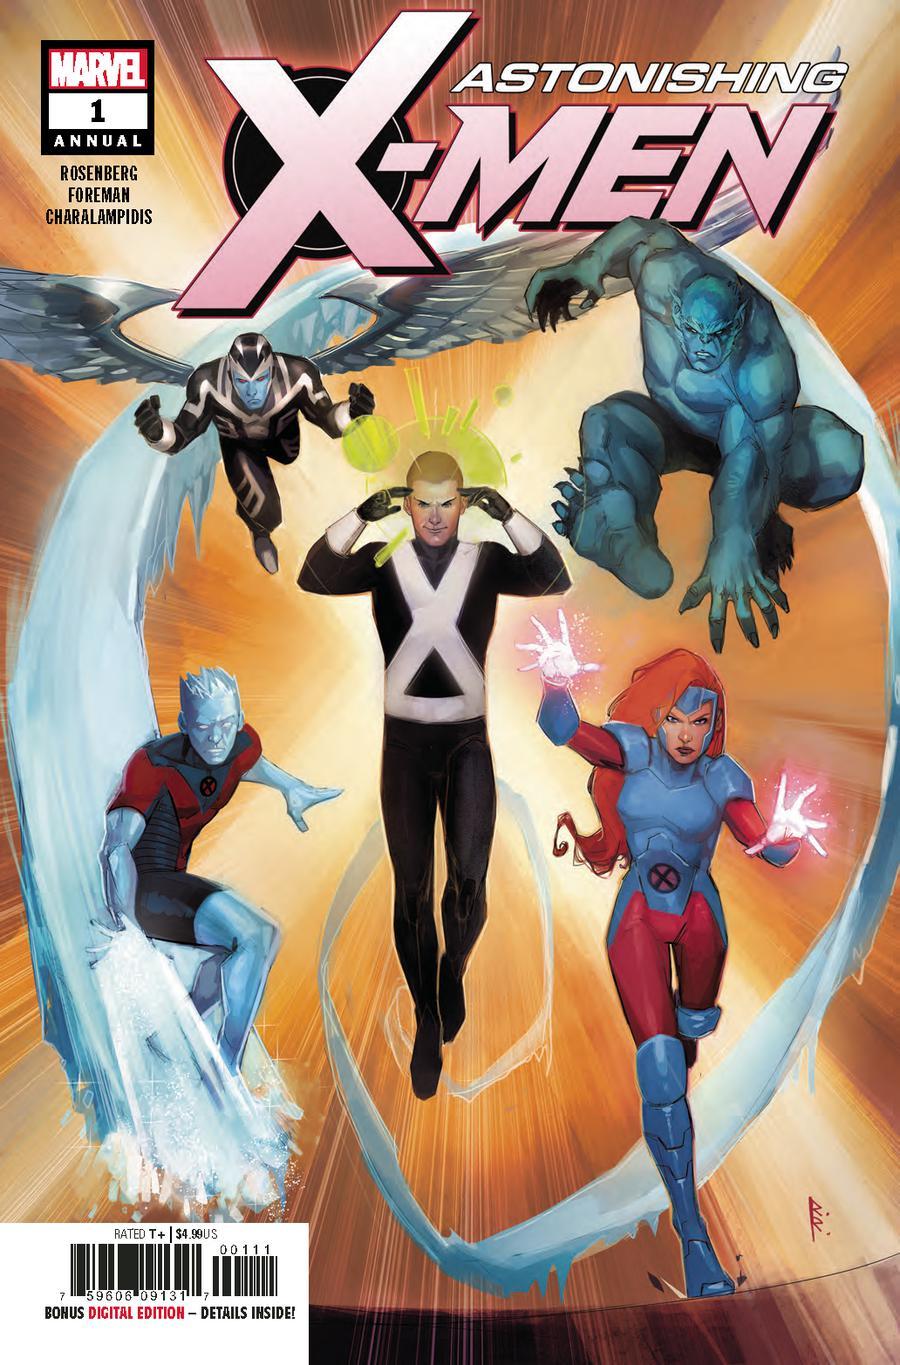 Astonishing X-Men Vol. 4 Annual #1